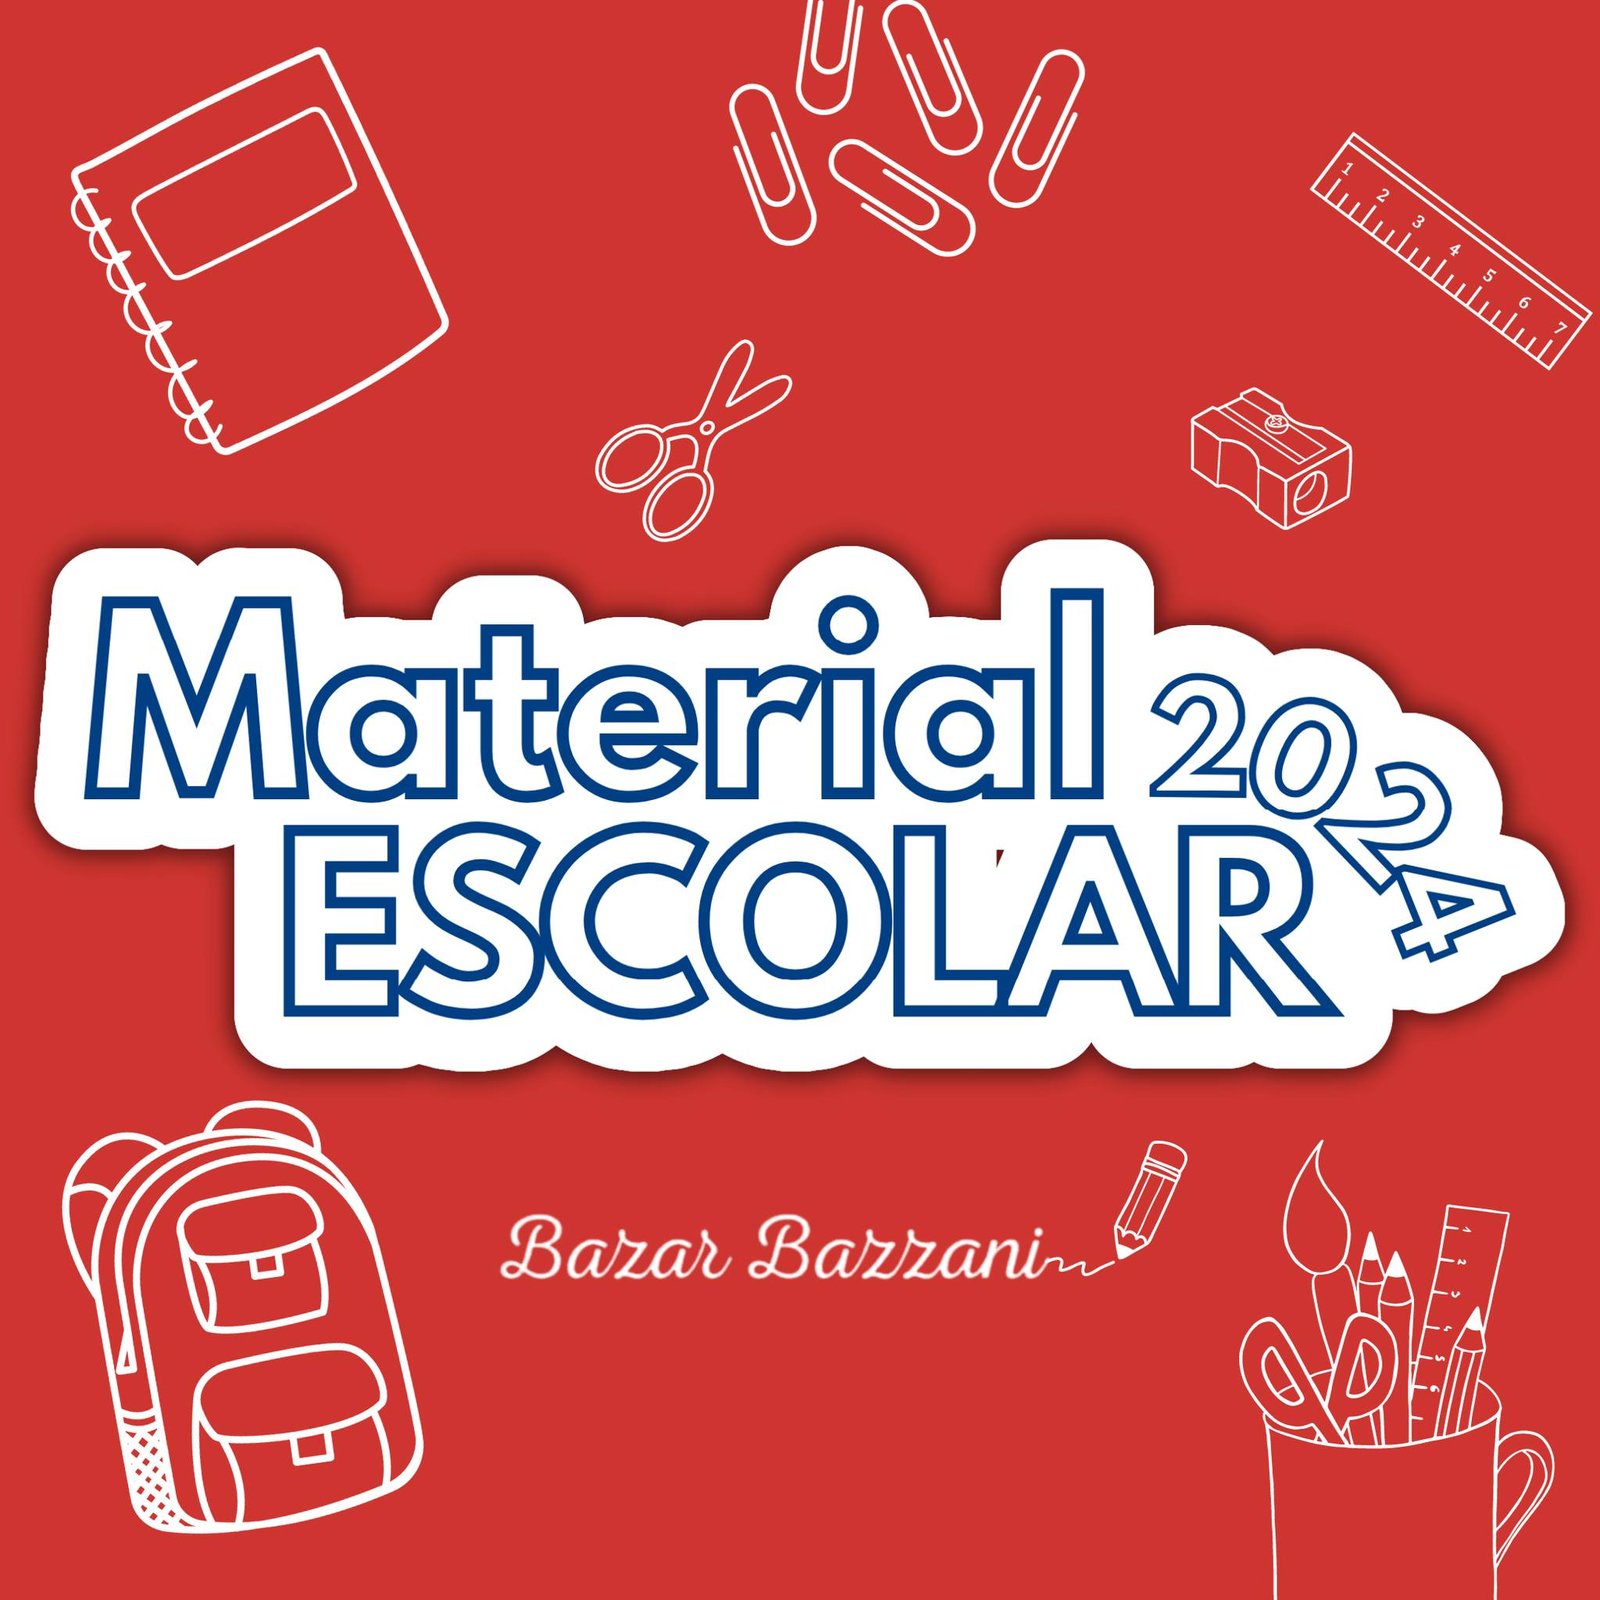 Bazar Bazzani - Material Escolar